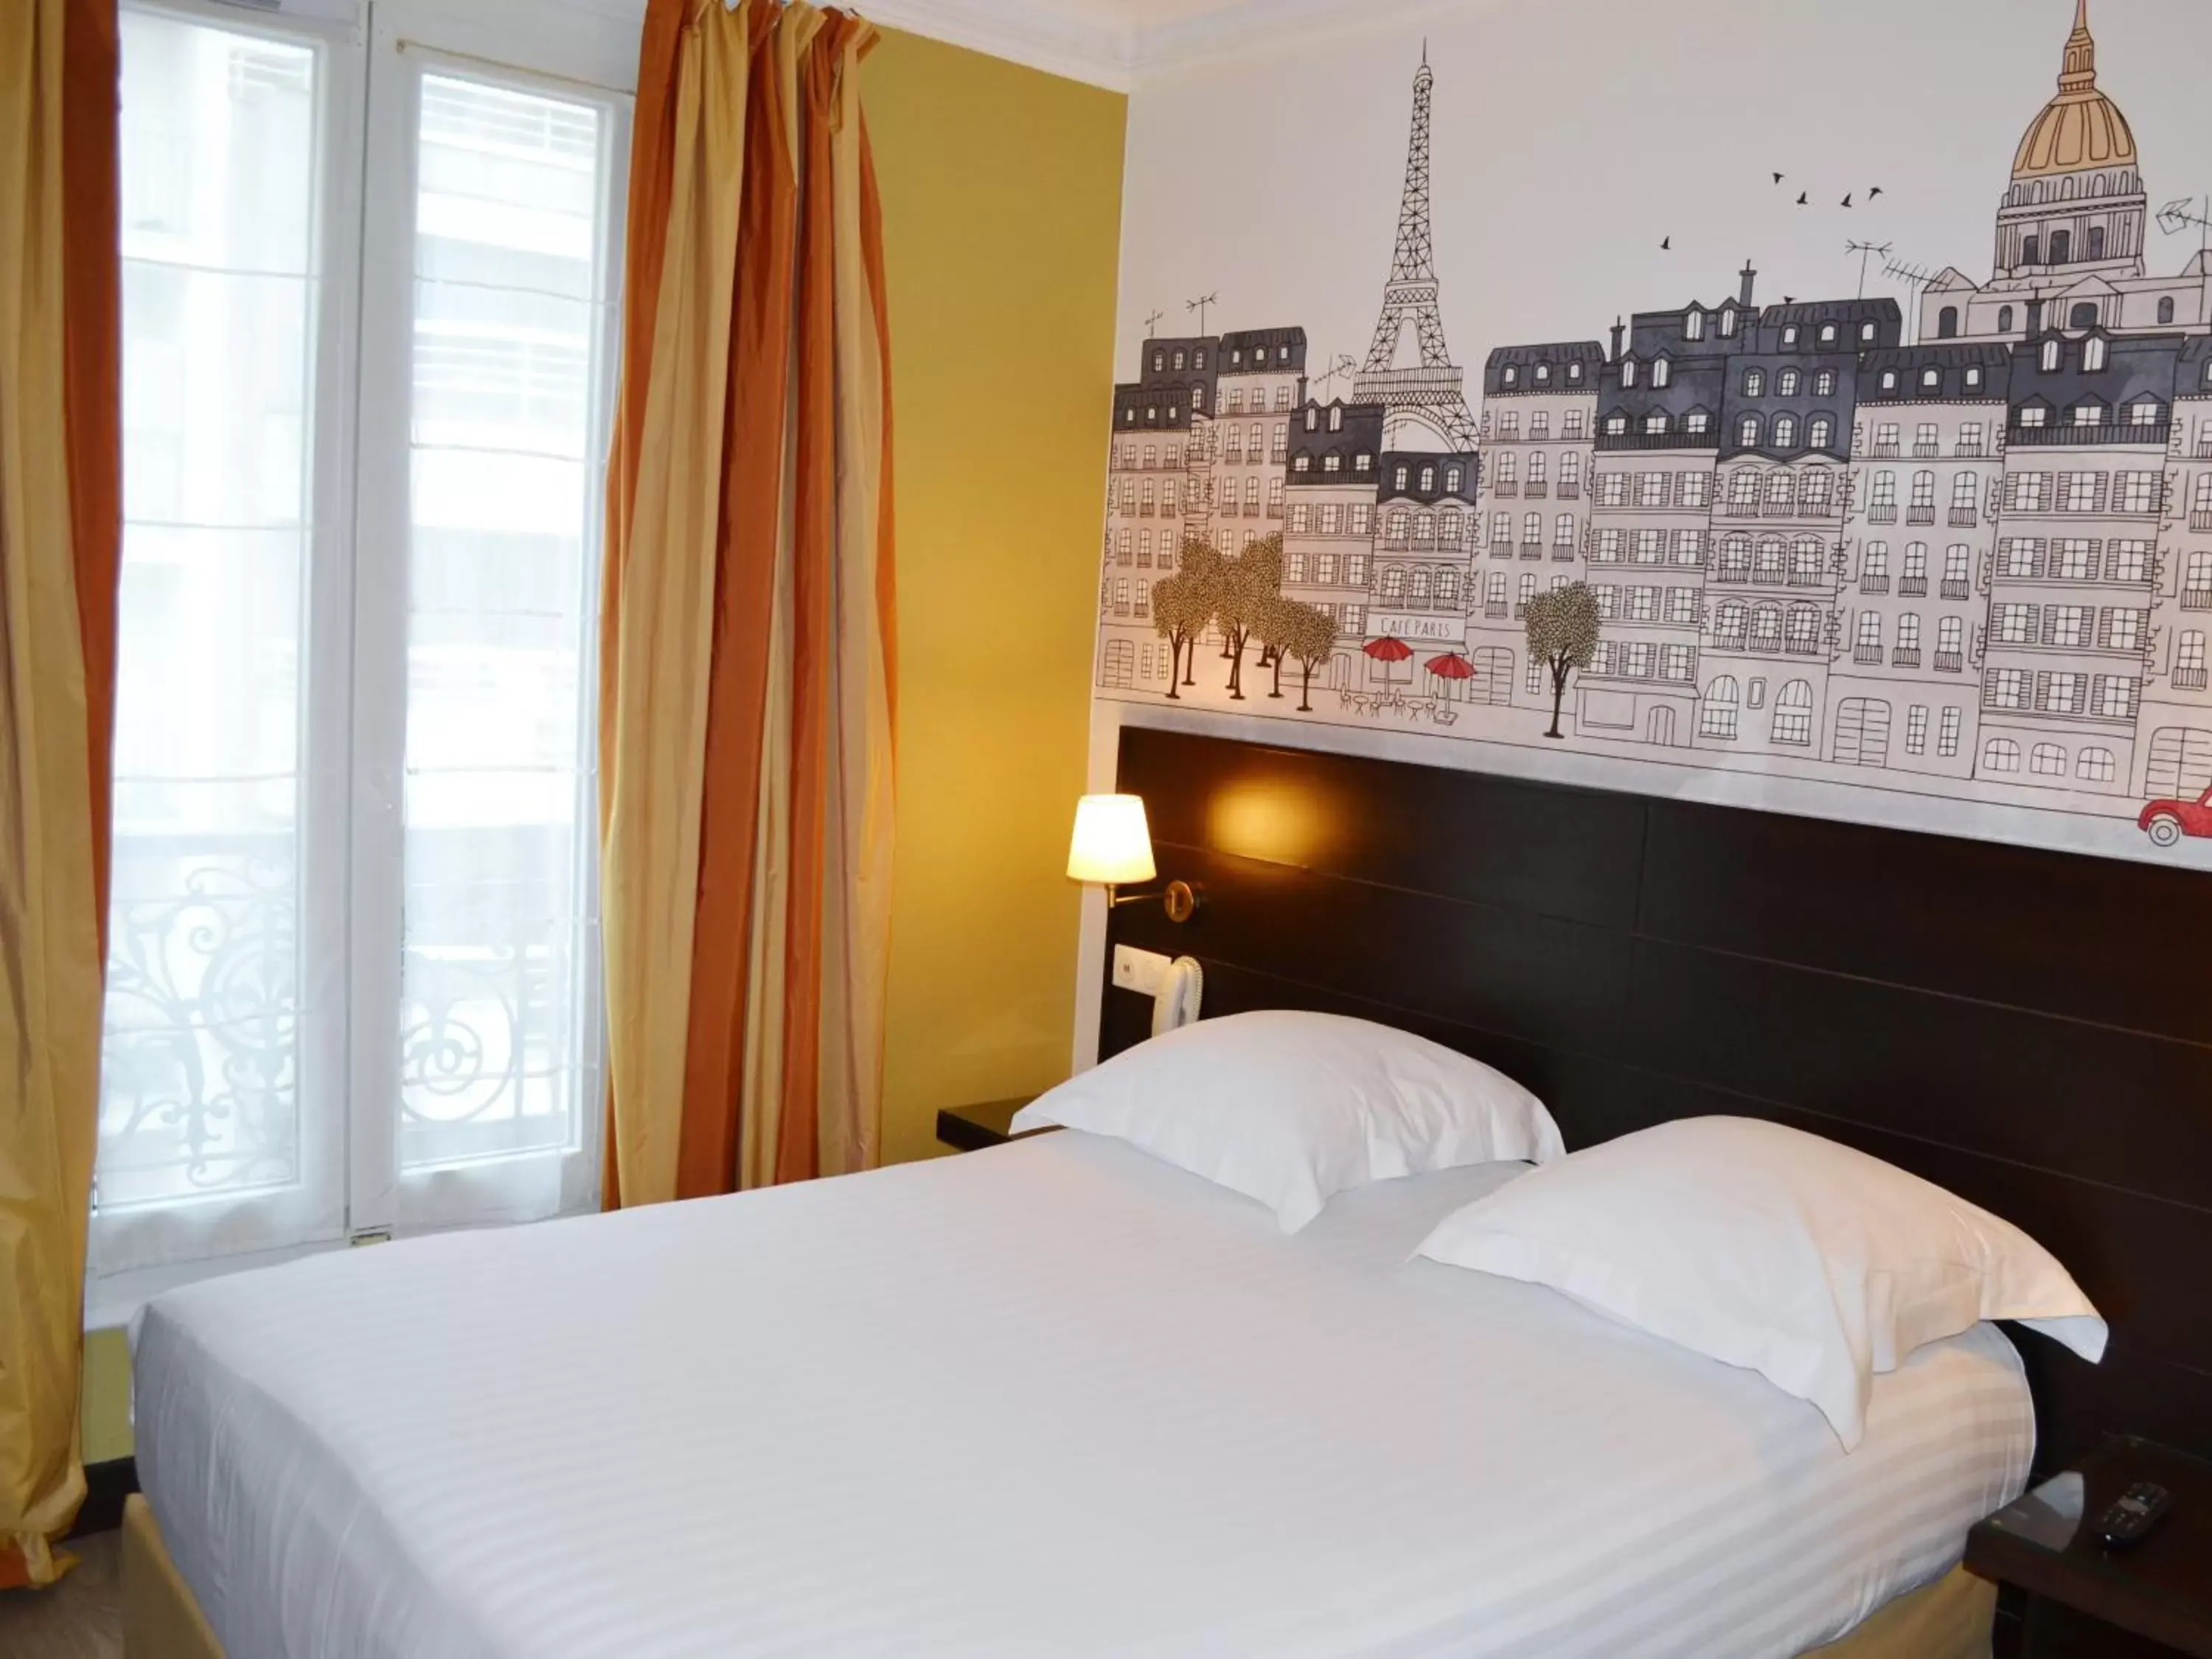 Bed in Hôtel de l'Exposition - Tour Eiffel